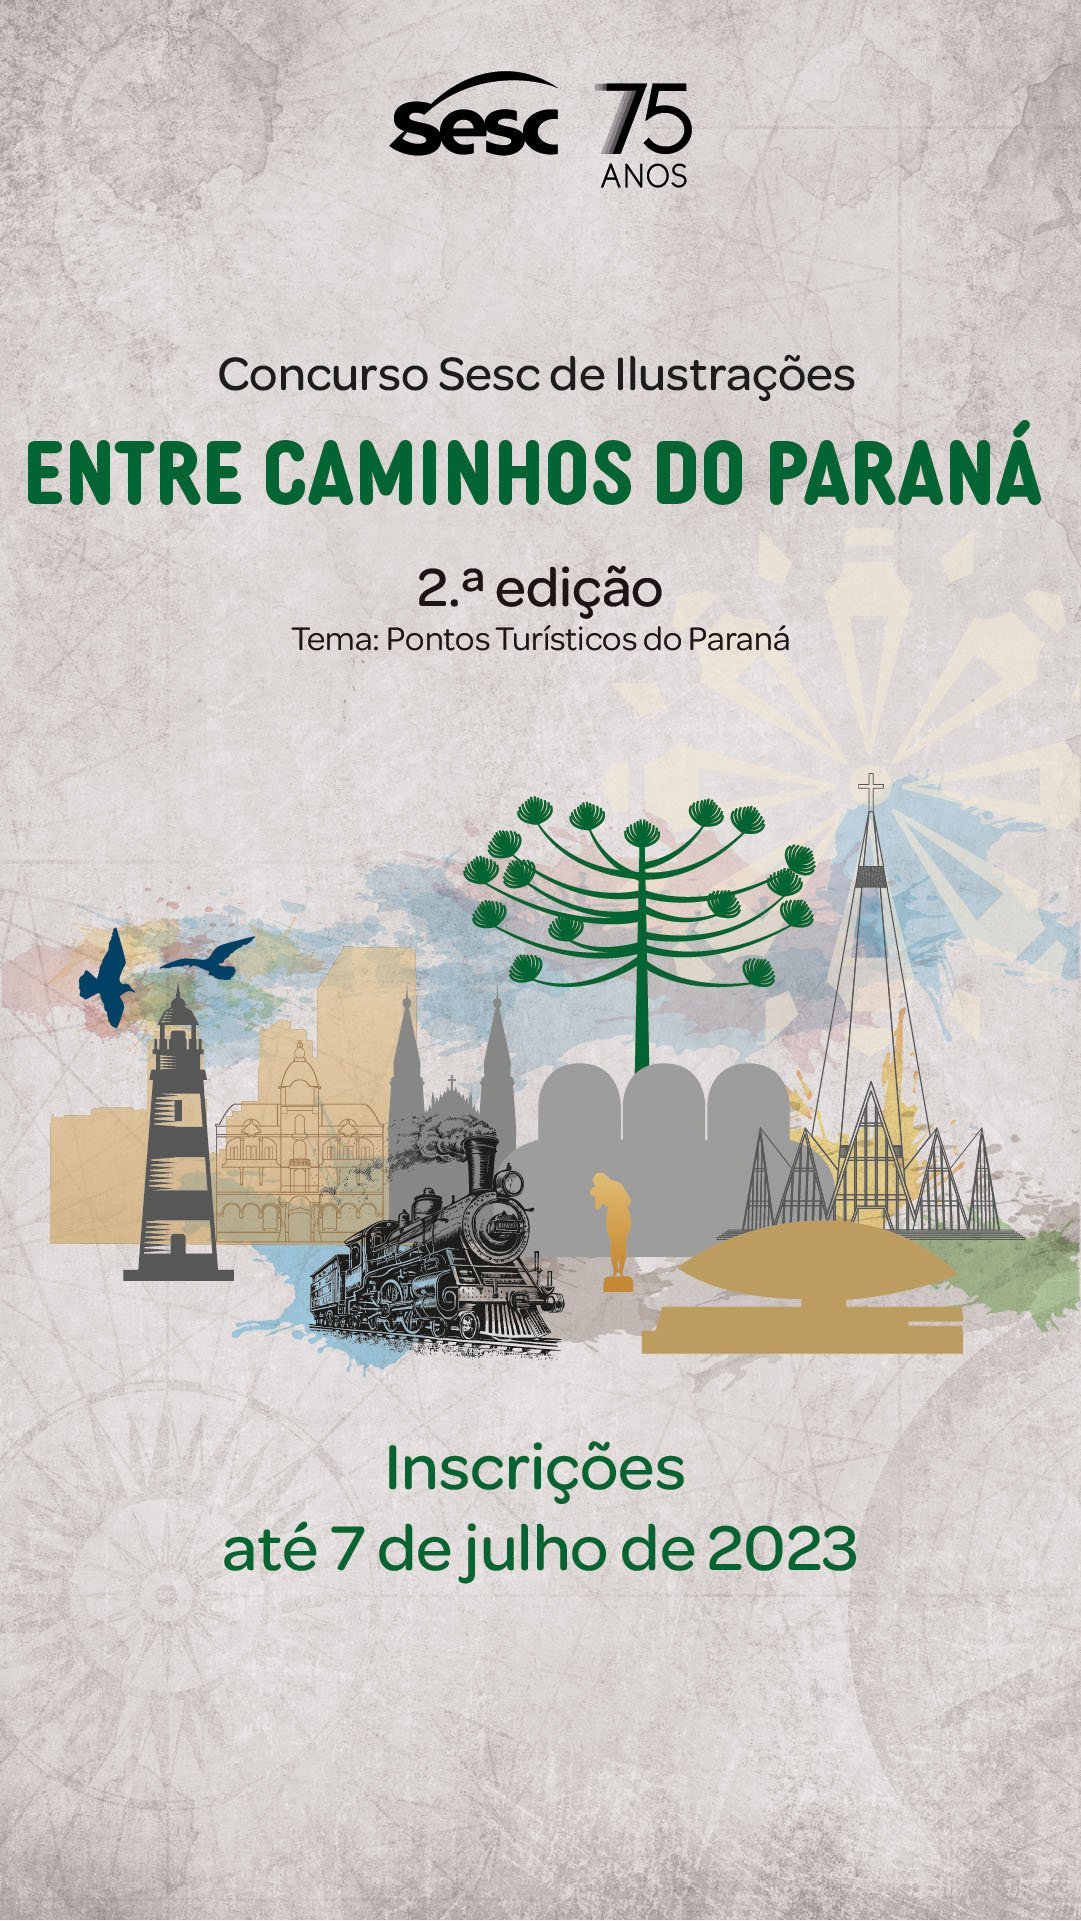 Arapongas adere ao Concurso “Entre Caminhos do Paraná” promovido pelo Sesc-PR;  saiba como participar